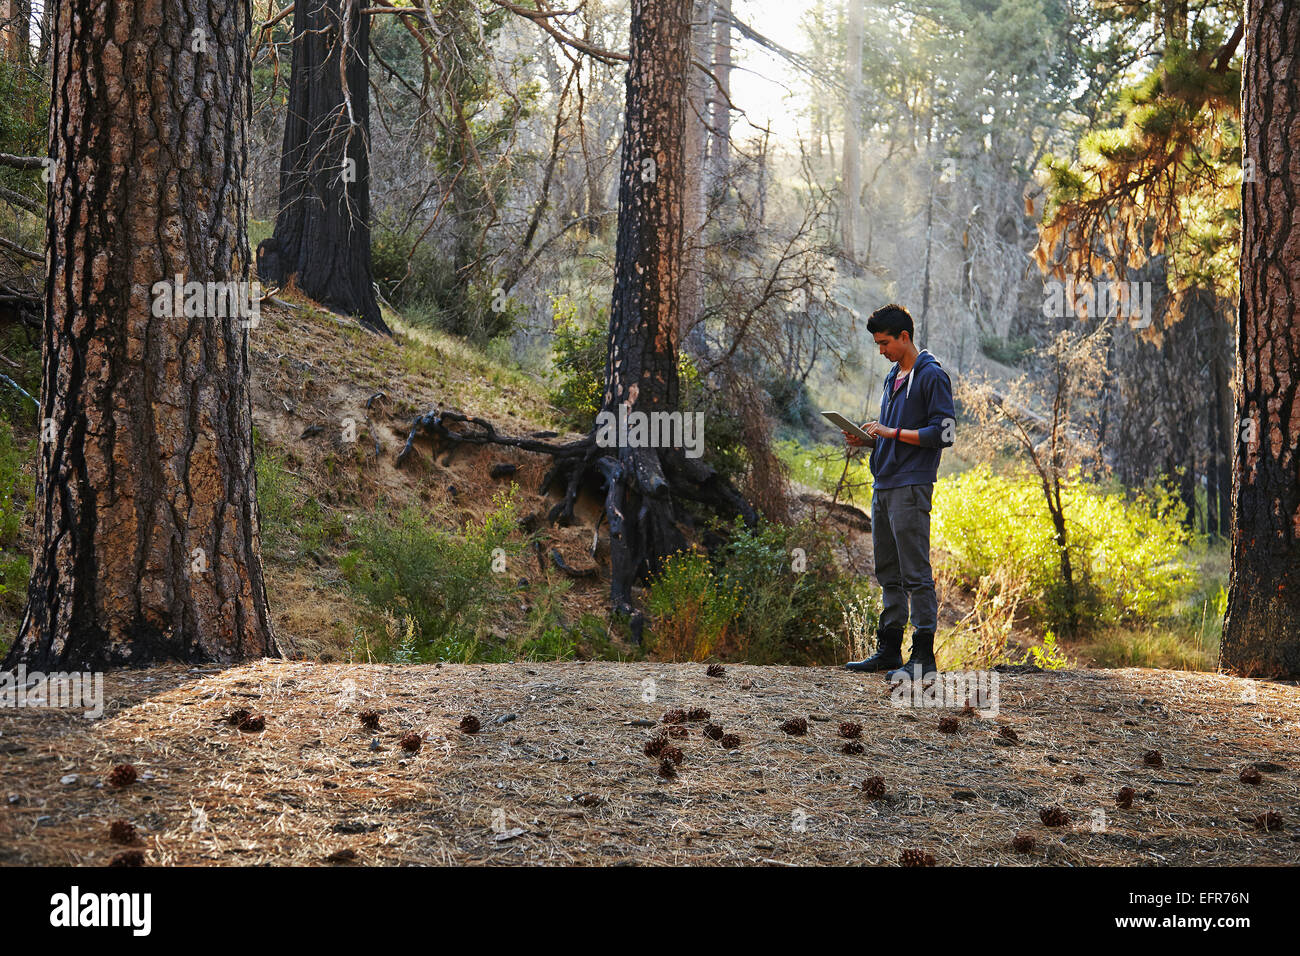 Giovane uomo guardando digitale compressa nella foresta, Los Angeles, California, Stati Uniti d'America Foto Stock